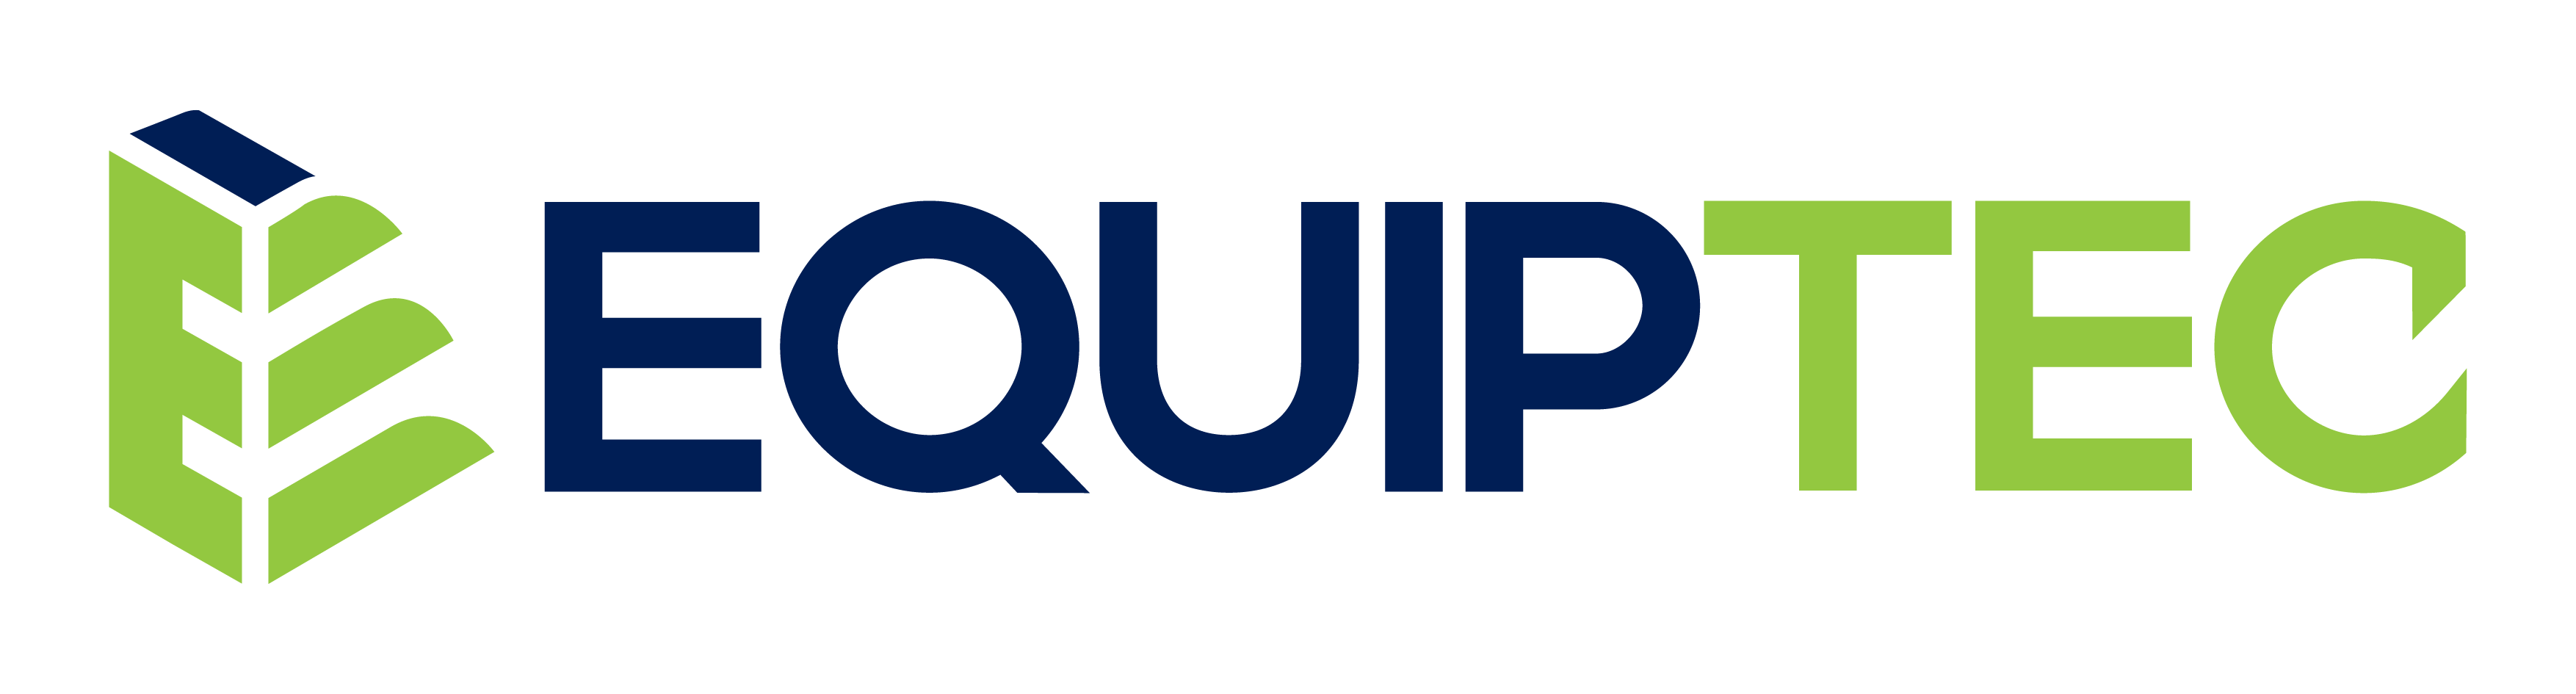 Equiptec Logo P1 002